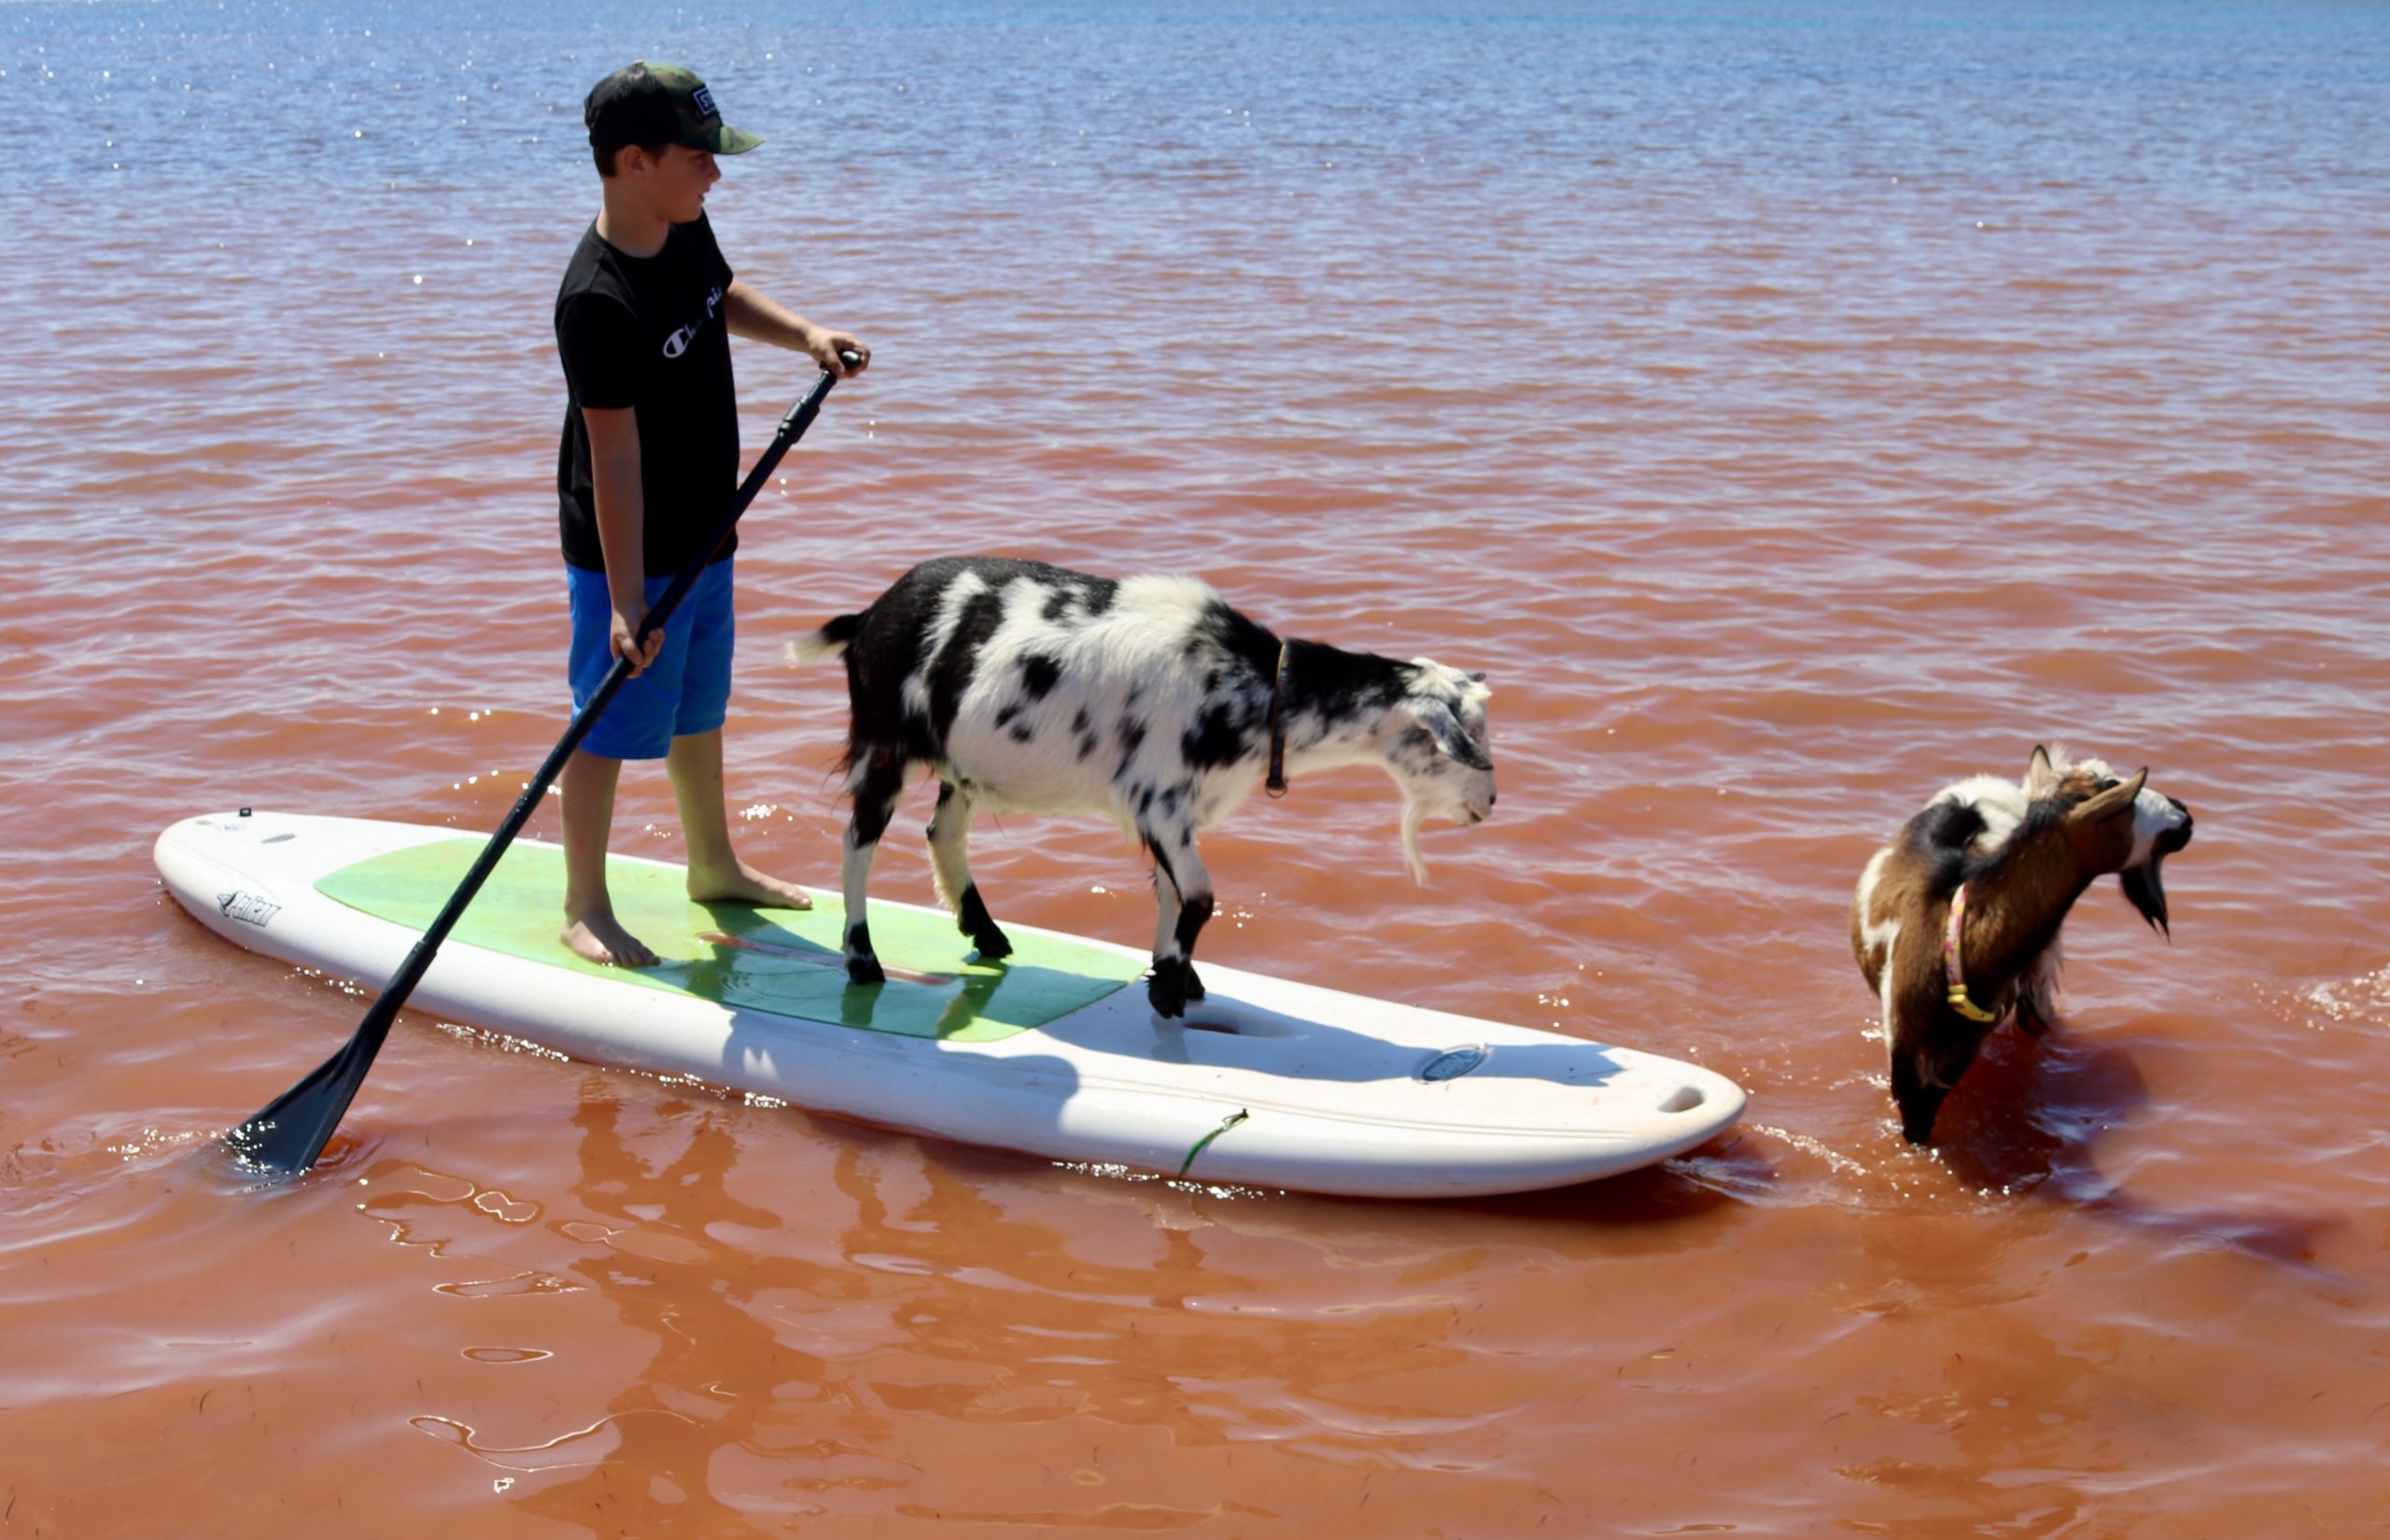 Cabras de praia em uma prancha de stand up paddle